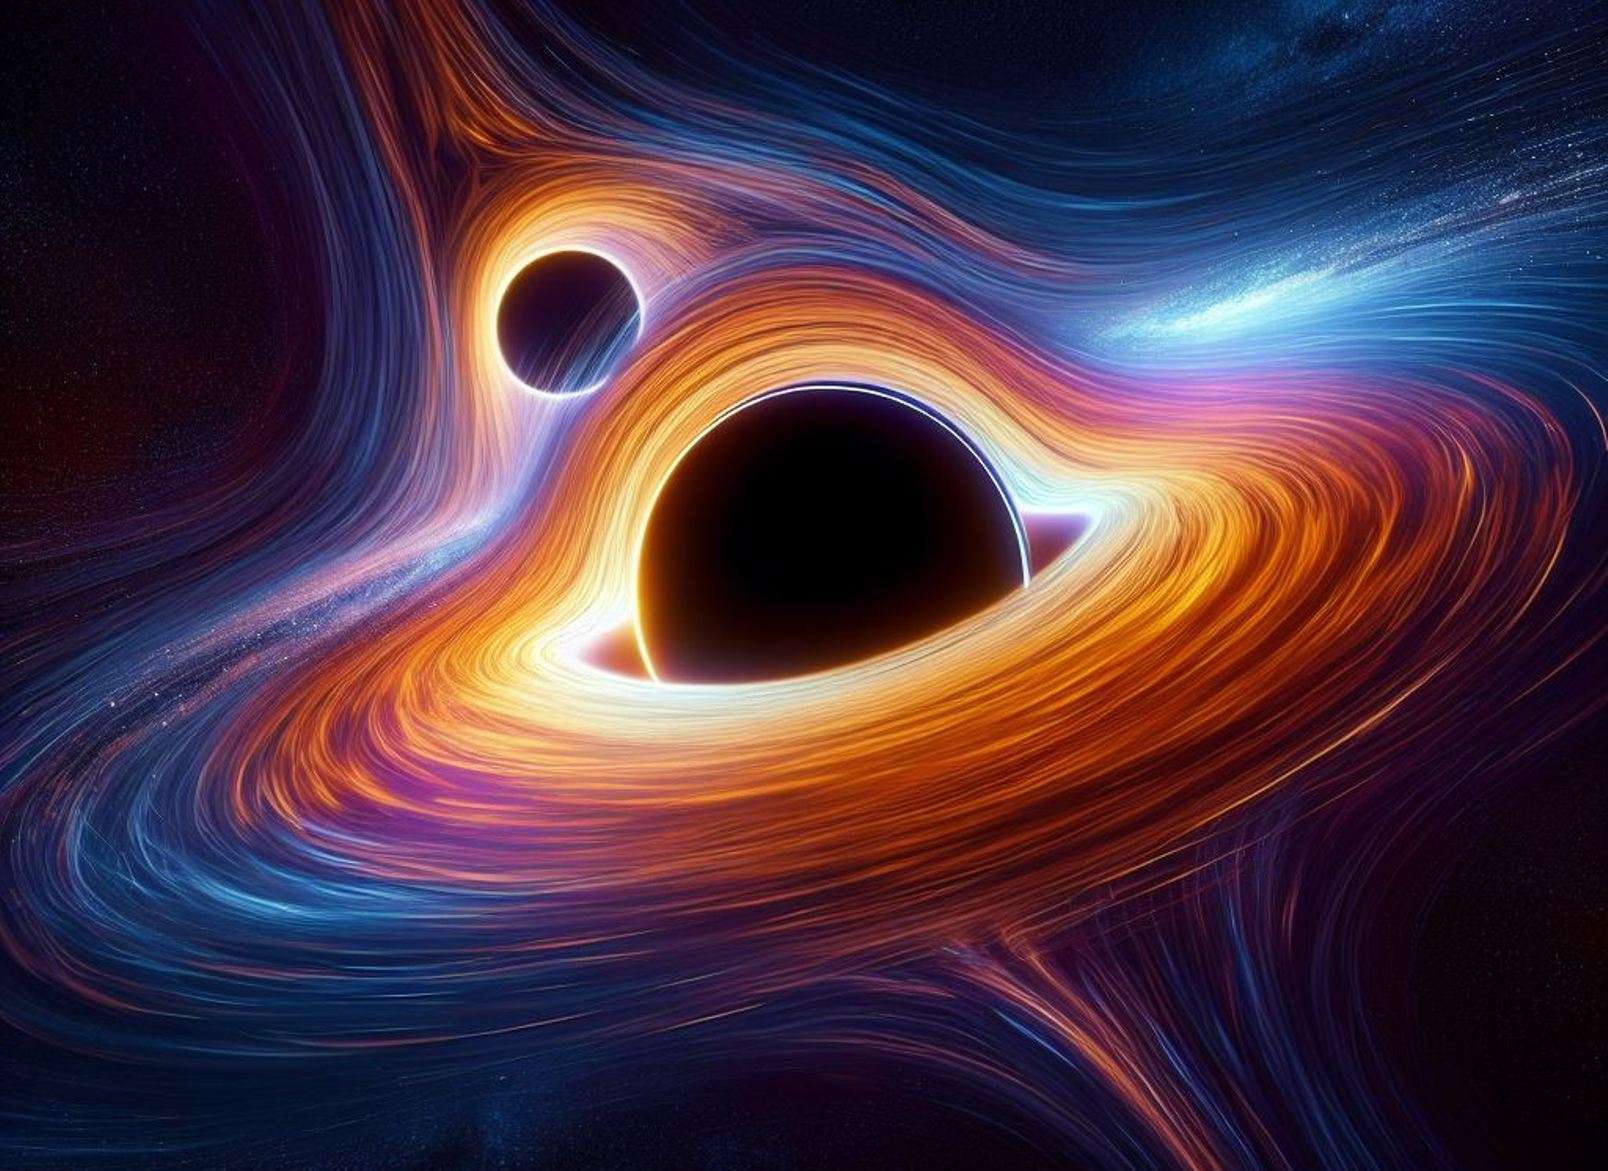 Twee zwarte gaten met een massa van 28 miljard zonsmassa zitten al miljarden jaren vast. Waarom?